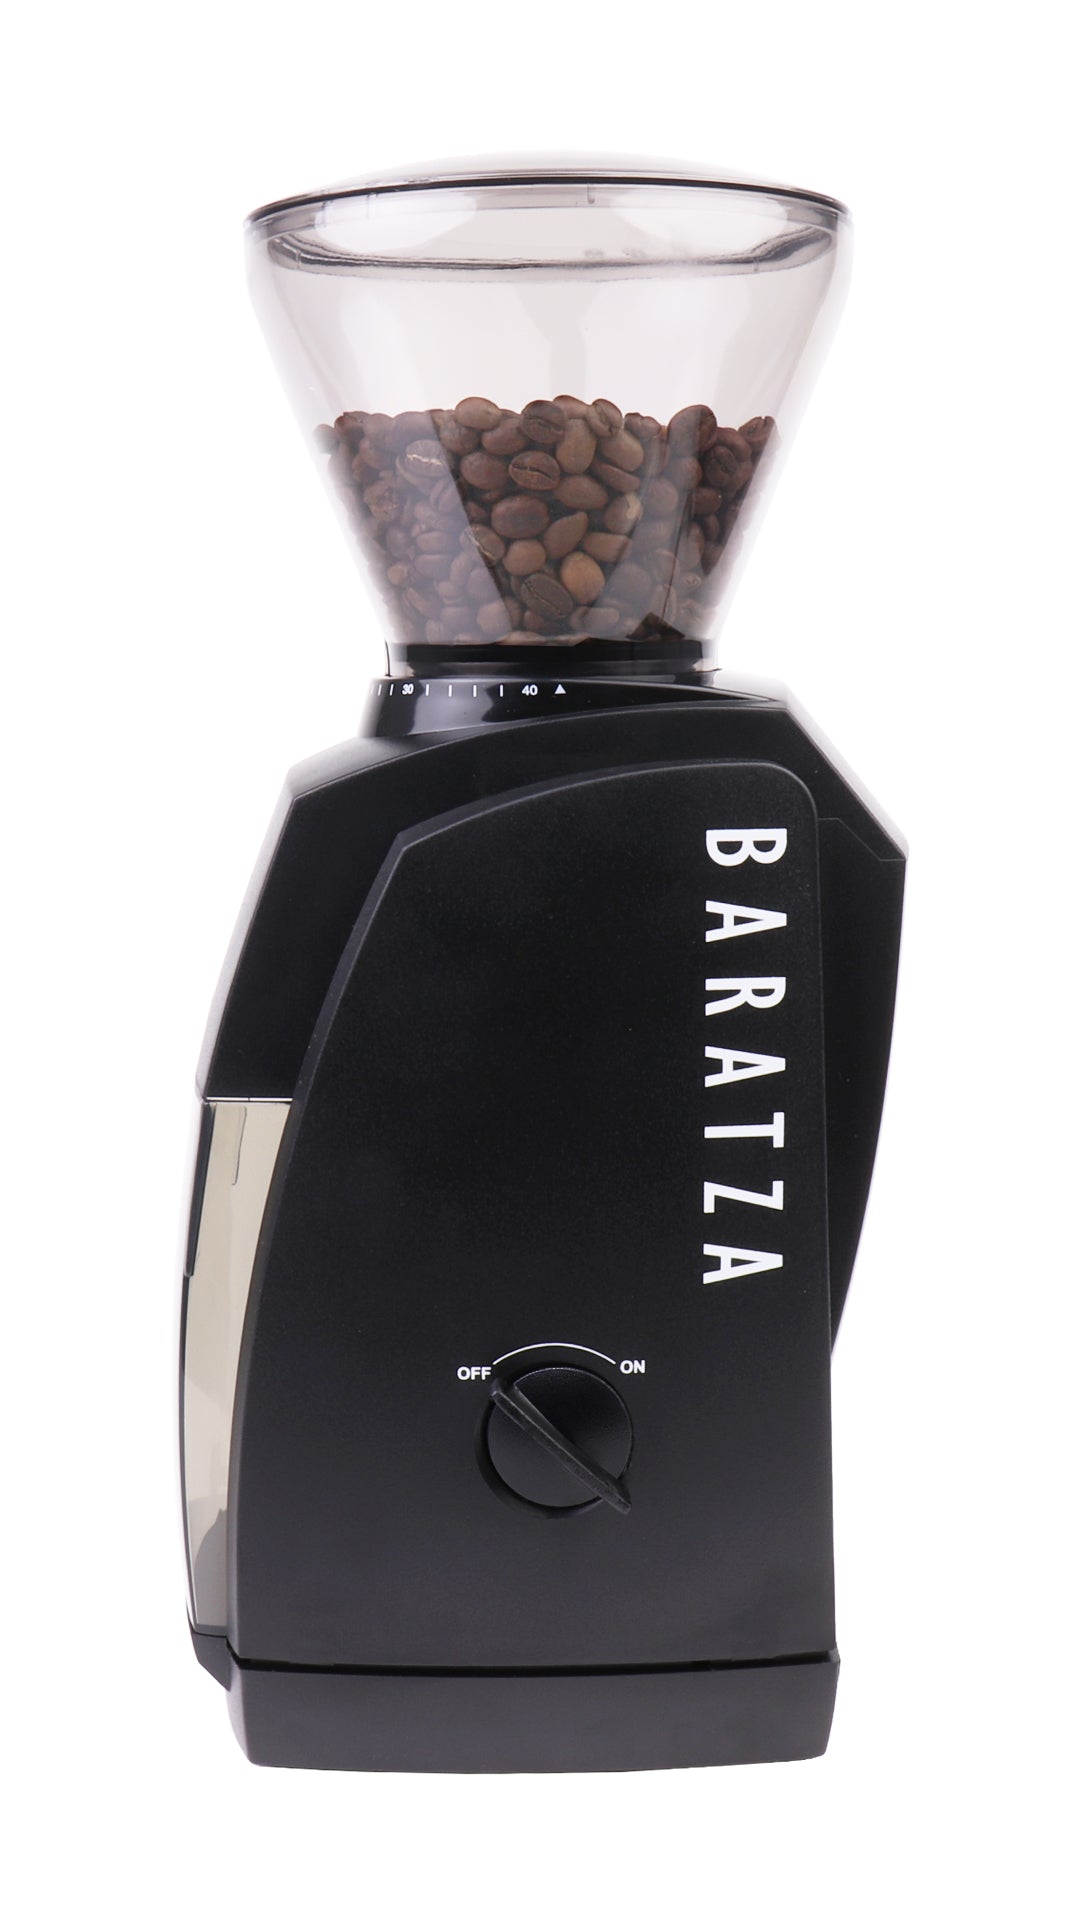 Baratza Encore Coffee Mill